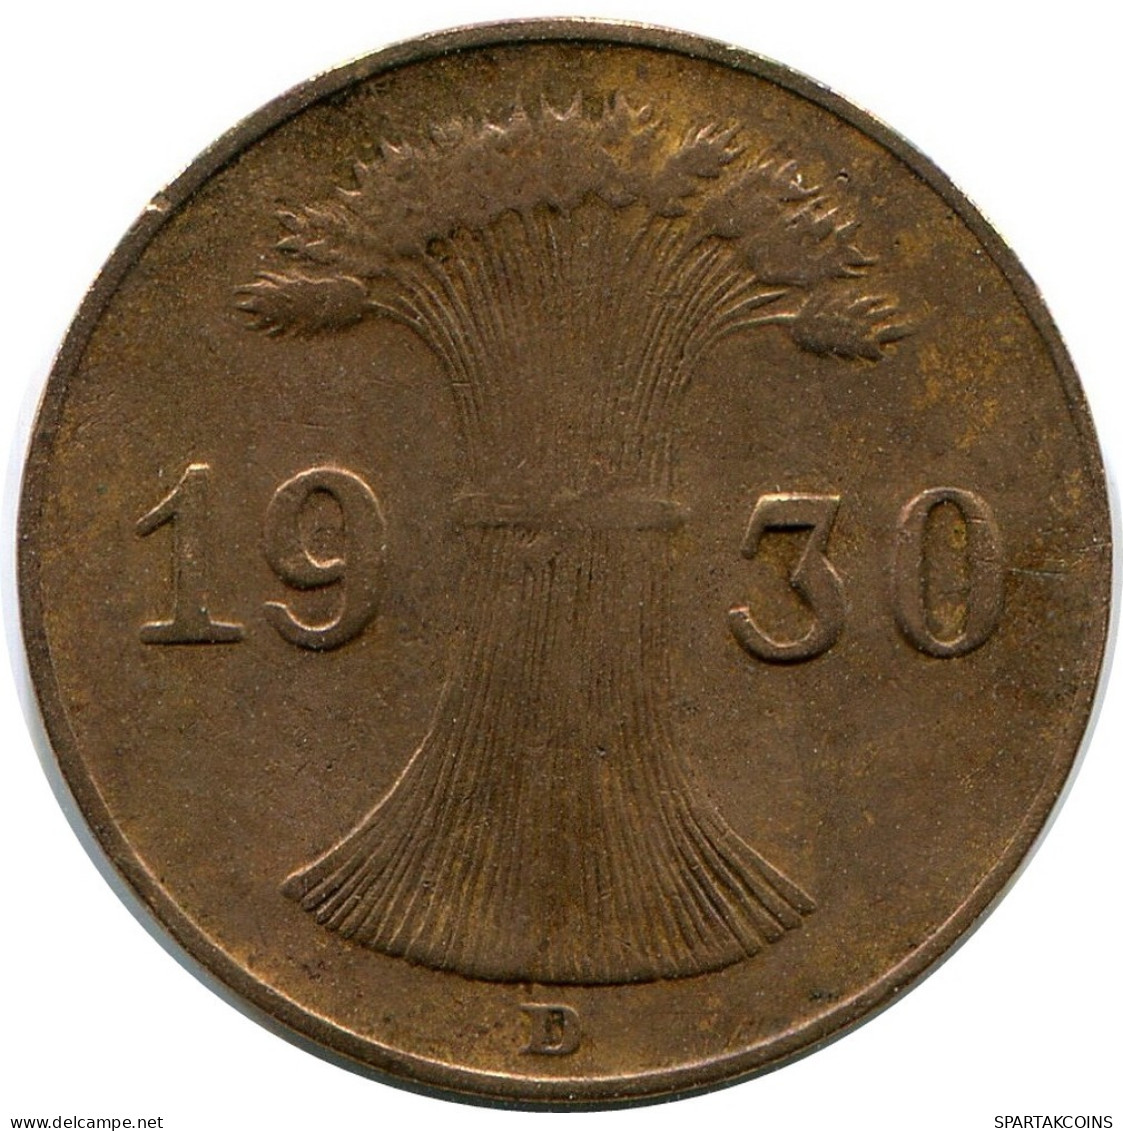 1 REICHSPFENNIG 1930 D DEUTSCHLAND Münze GERMANY #DB786.D.A - 1 Rentenpfennig & 1 Reichspfennig